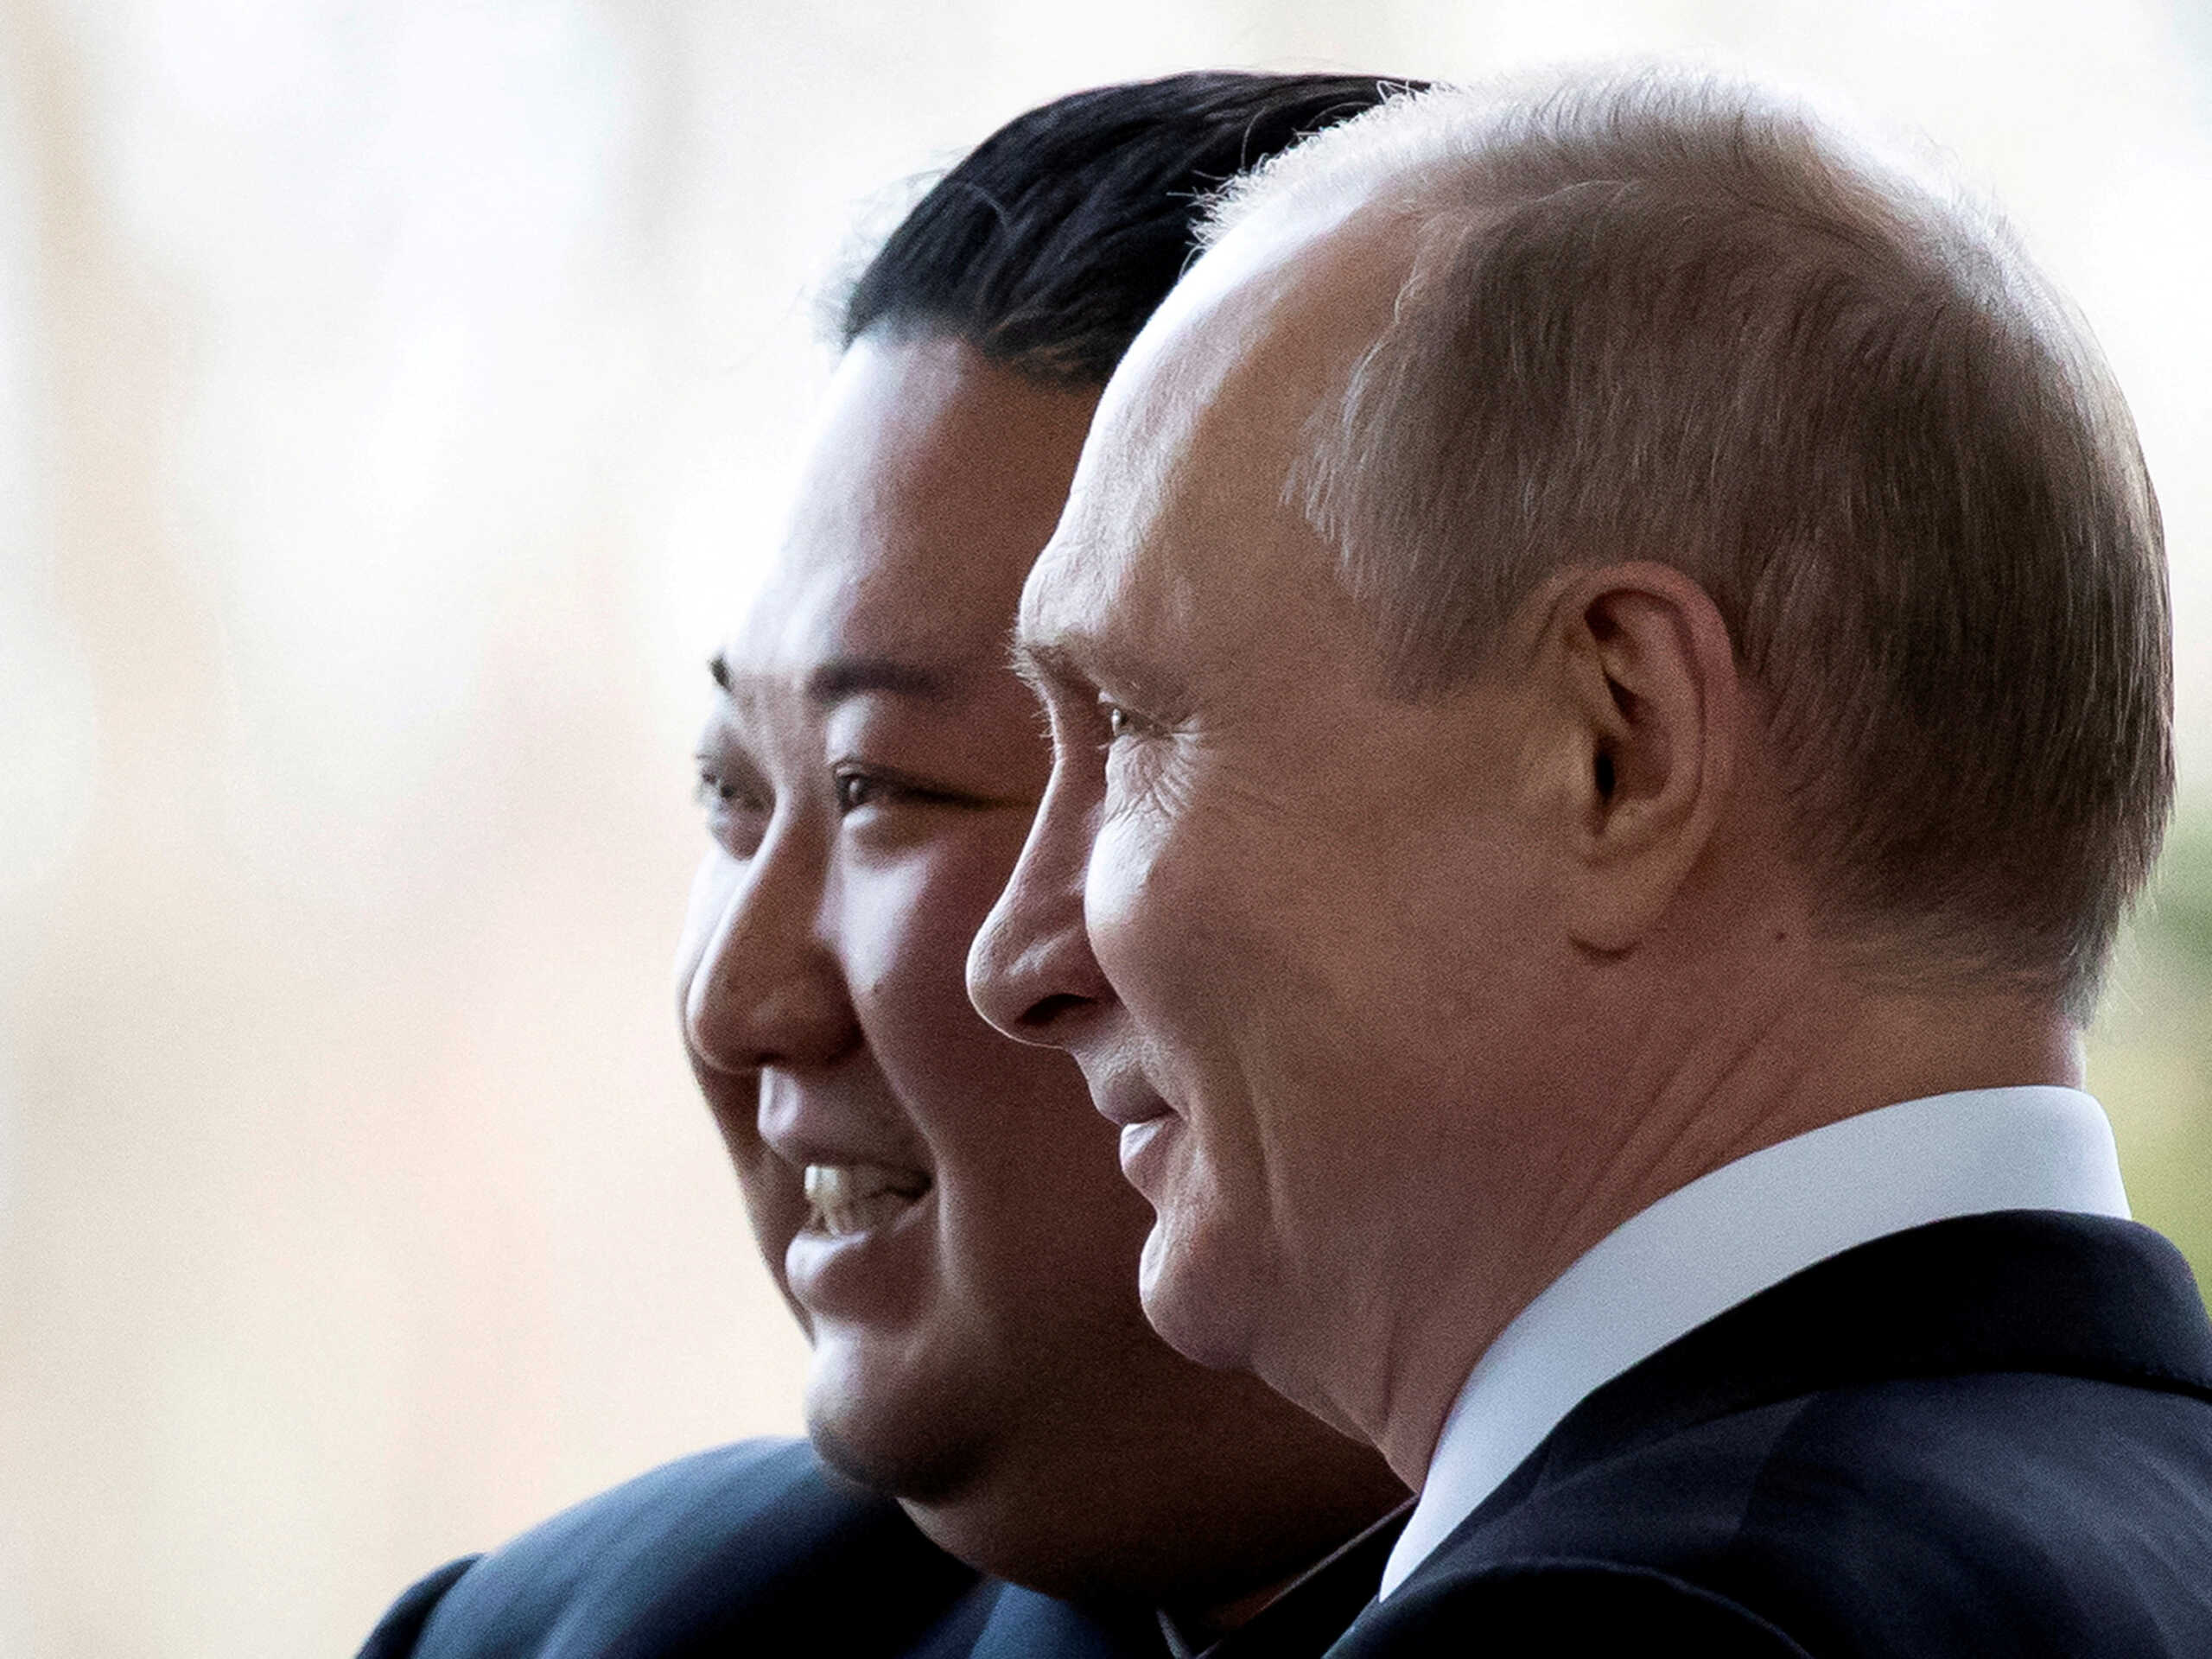 ΗΠΑ: Ο Κιμ Γιονγκ Ουν θέλει να πουλήσει όπλα στον Πούτιν για τον πόλεμο στην Ουκρανία